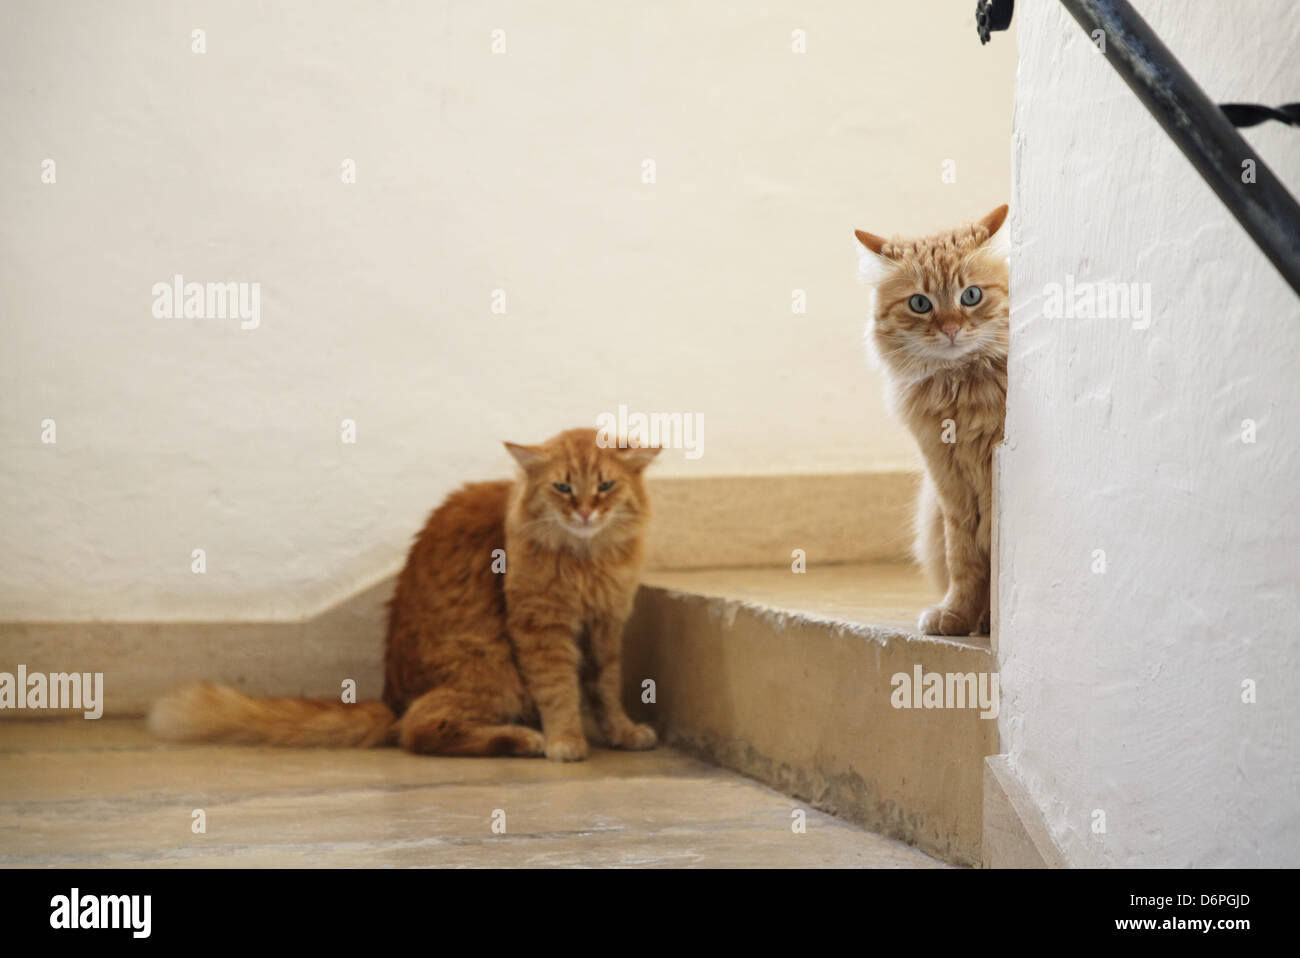 Malta, Gozo, Cat peaceful, harmonious, Malta, Gozo, Katze friedlich, Harmonisch, Stock Photo